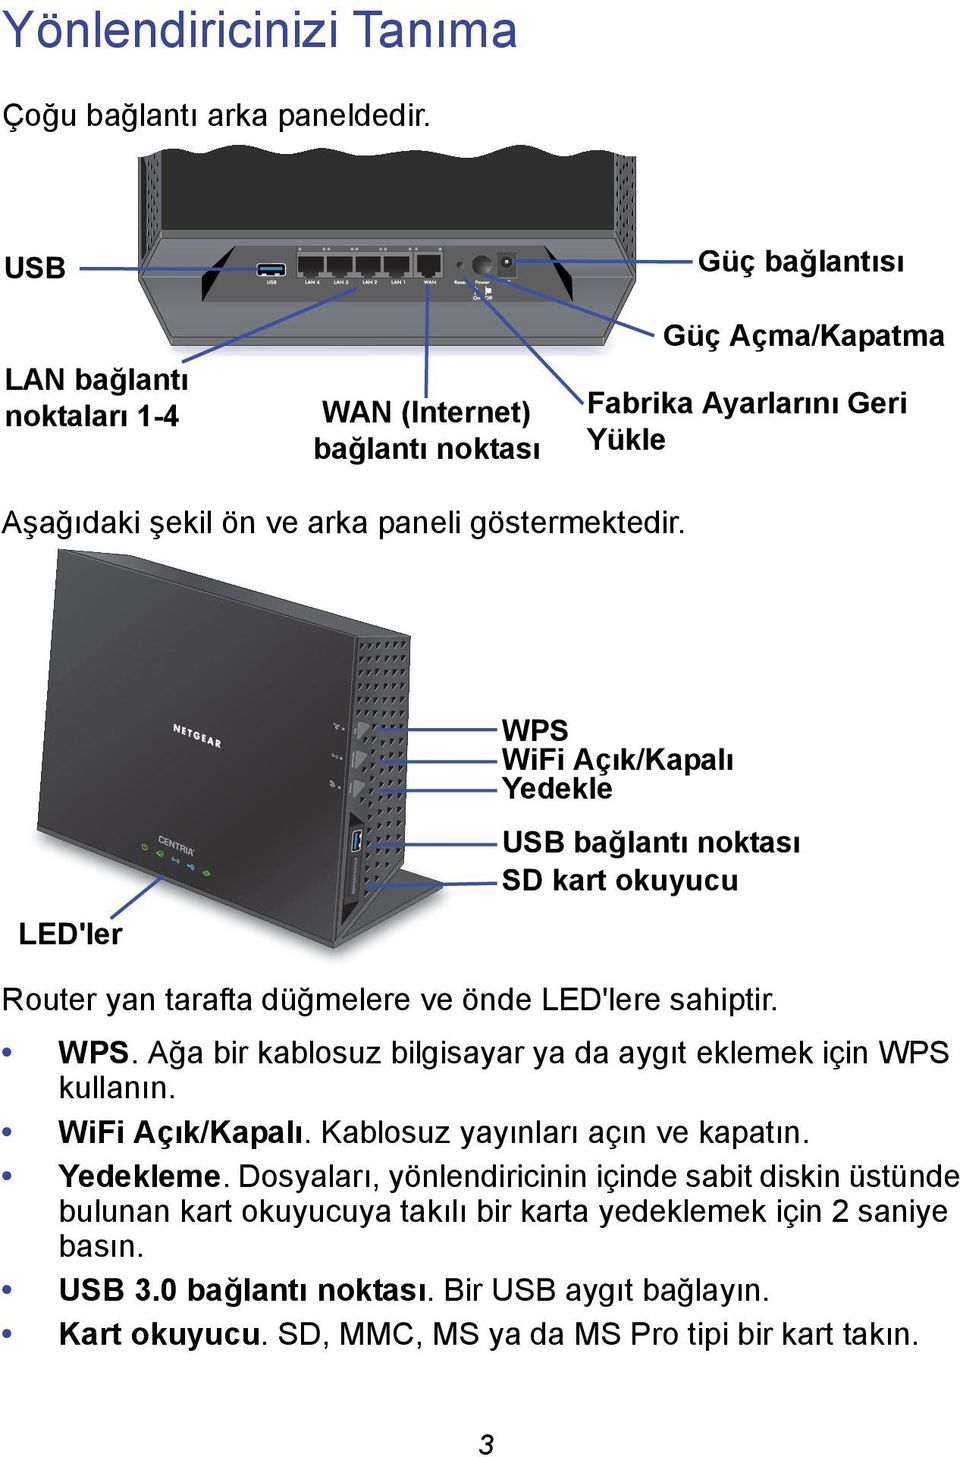 LED'ler WPS WiFi Açık/Kapalı Yedekle USB bağlantı noktası SD kart okuyucu Router yan tarafta düğmelere ve önde LED'lere sahiptir. WPS. Ağa bir kablosuz bilgisayar ya da aygıt eklemek için WPS kullanın.